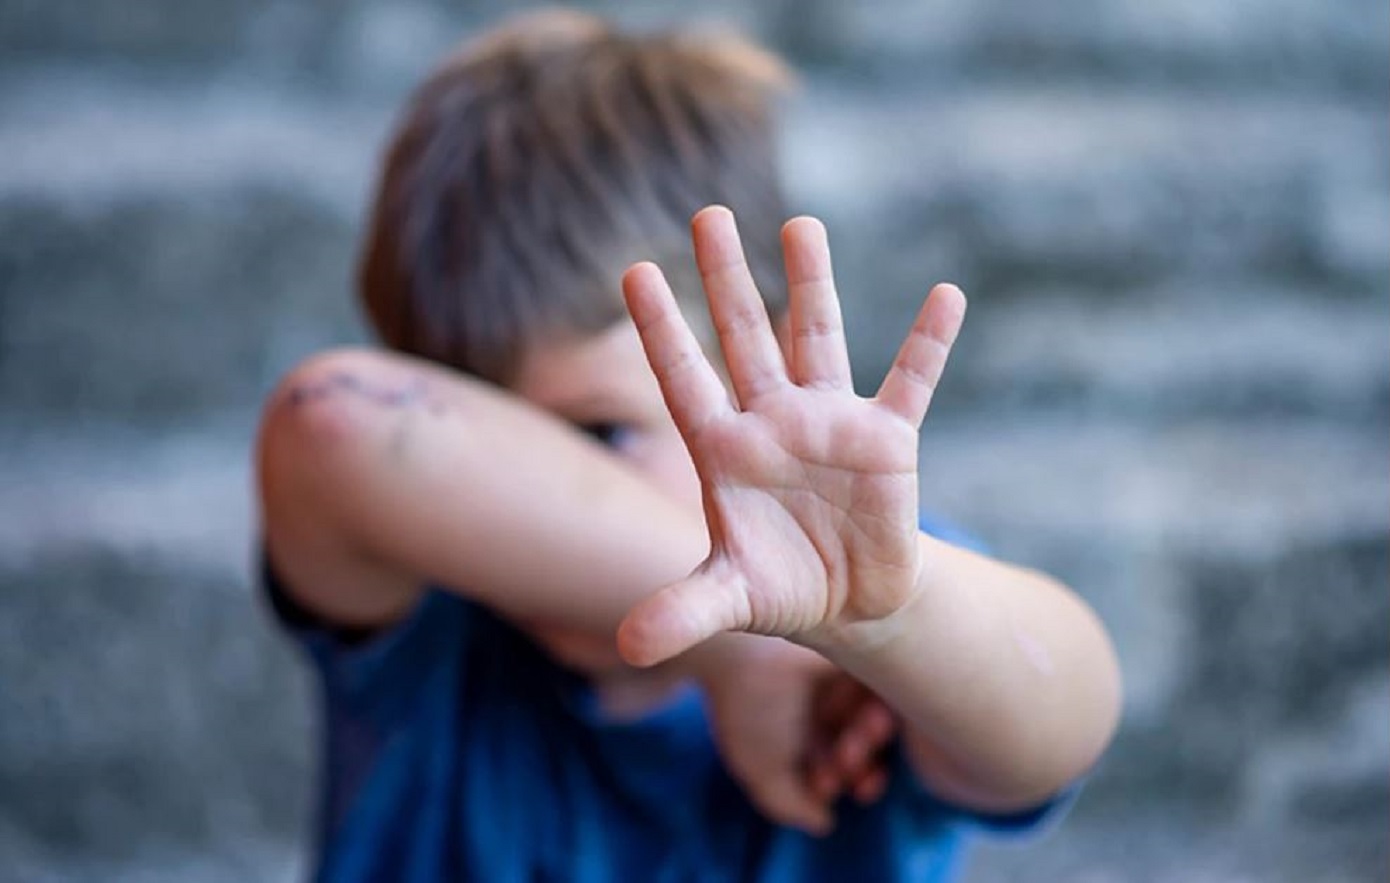 Τρία τα παιδιά που κακοποιούσε ο νονός από το Ηράκλειο – Καταγγέλλουν ασέλγεια από την ηλικία των 5 ετών